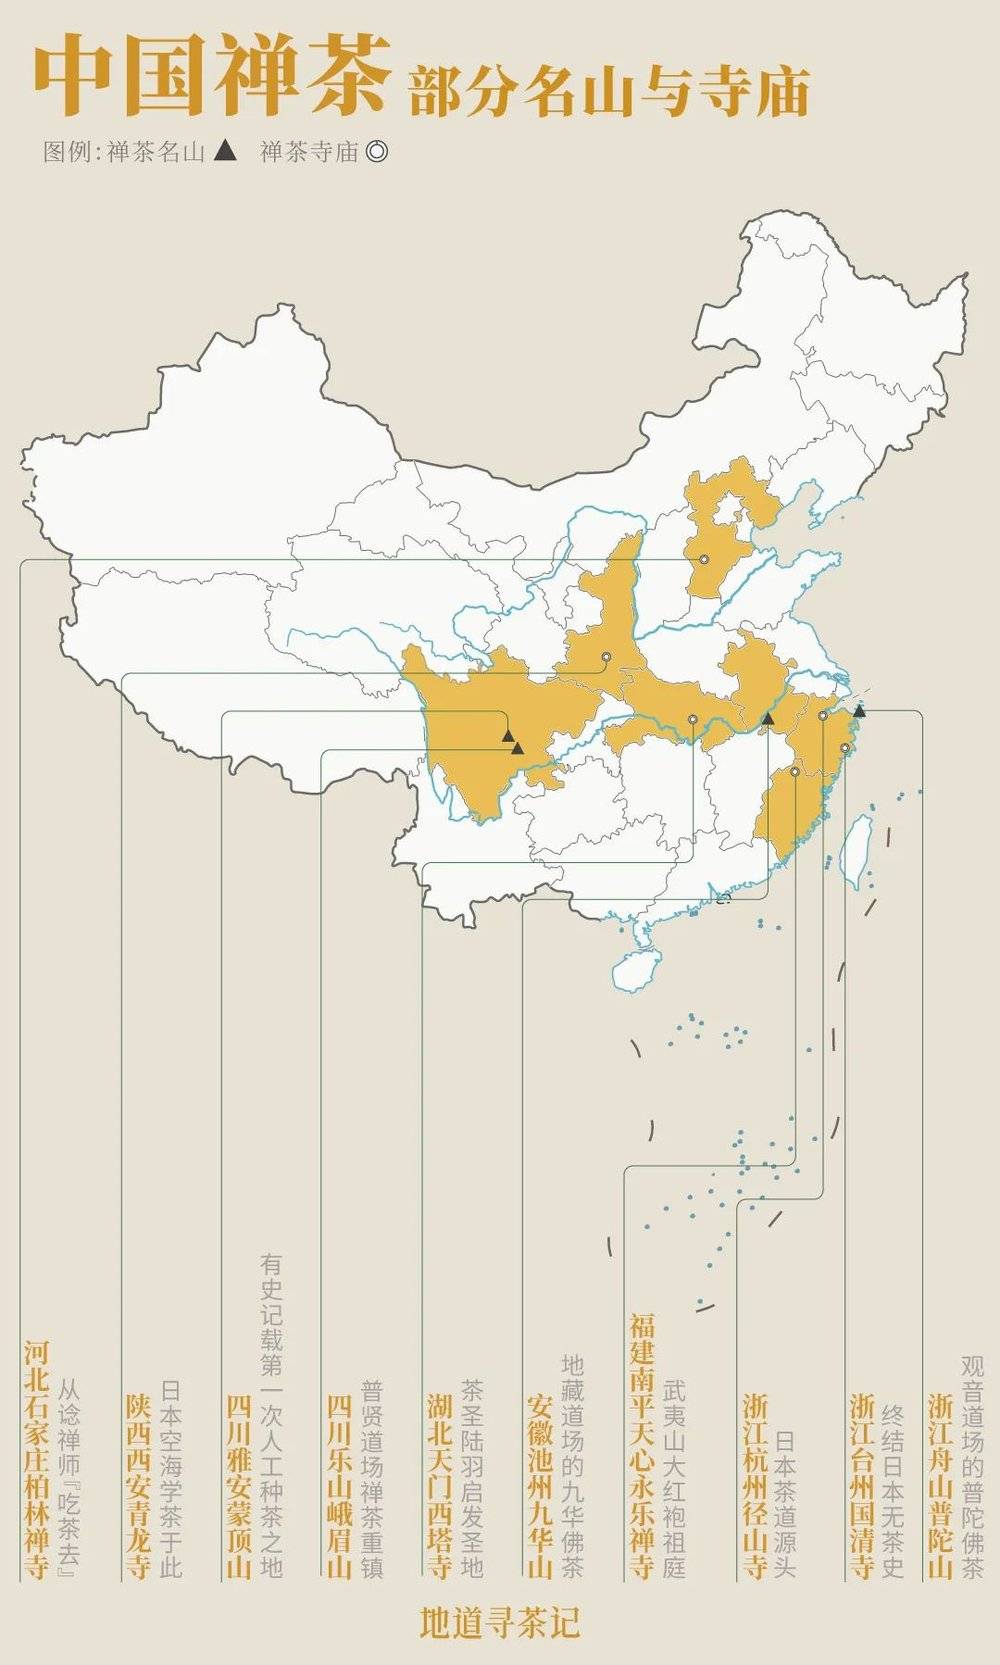 禅茶地图。制图/刘云鹏